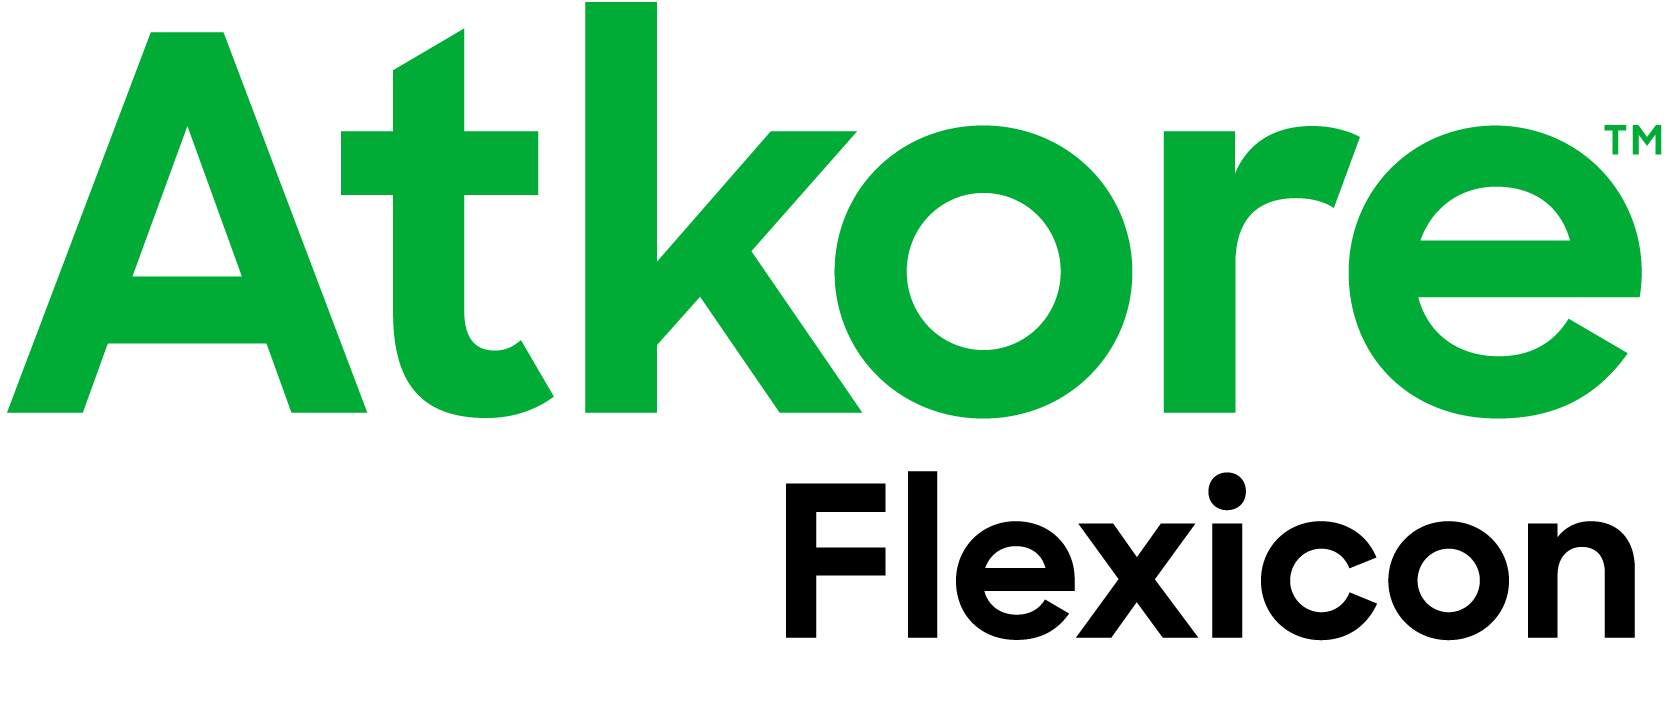 ATK 24194 Brand Logo SubBrand Flexicon RGB Color